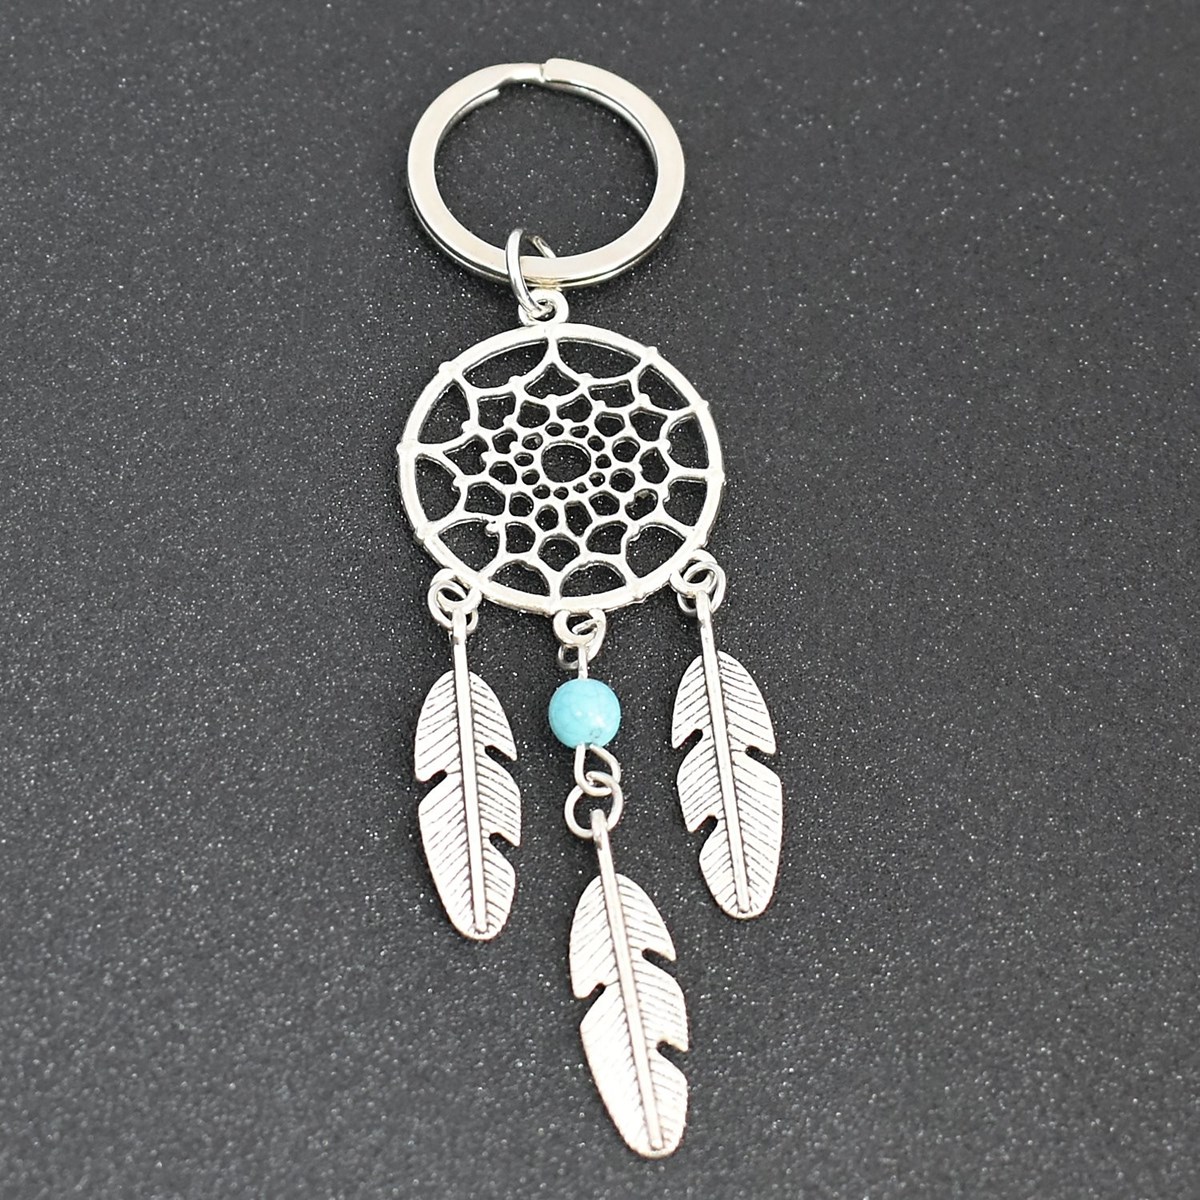 Porte-clés attrape-rêves 3 plumes avec perle bleu turquoise argenté - vue 4